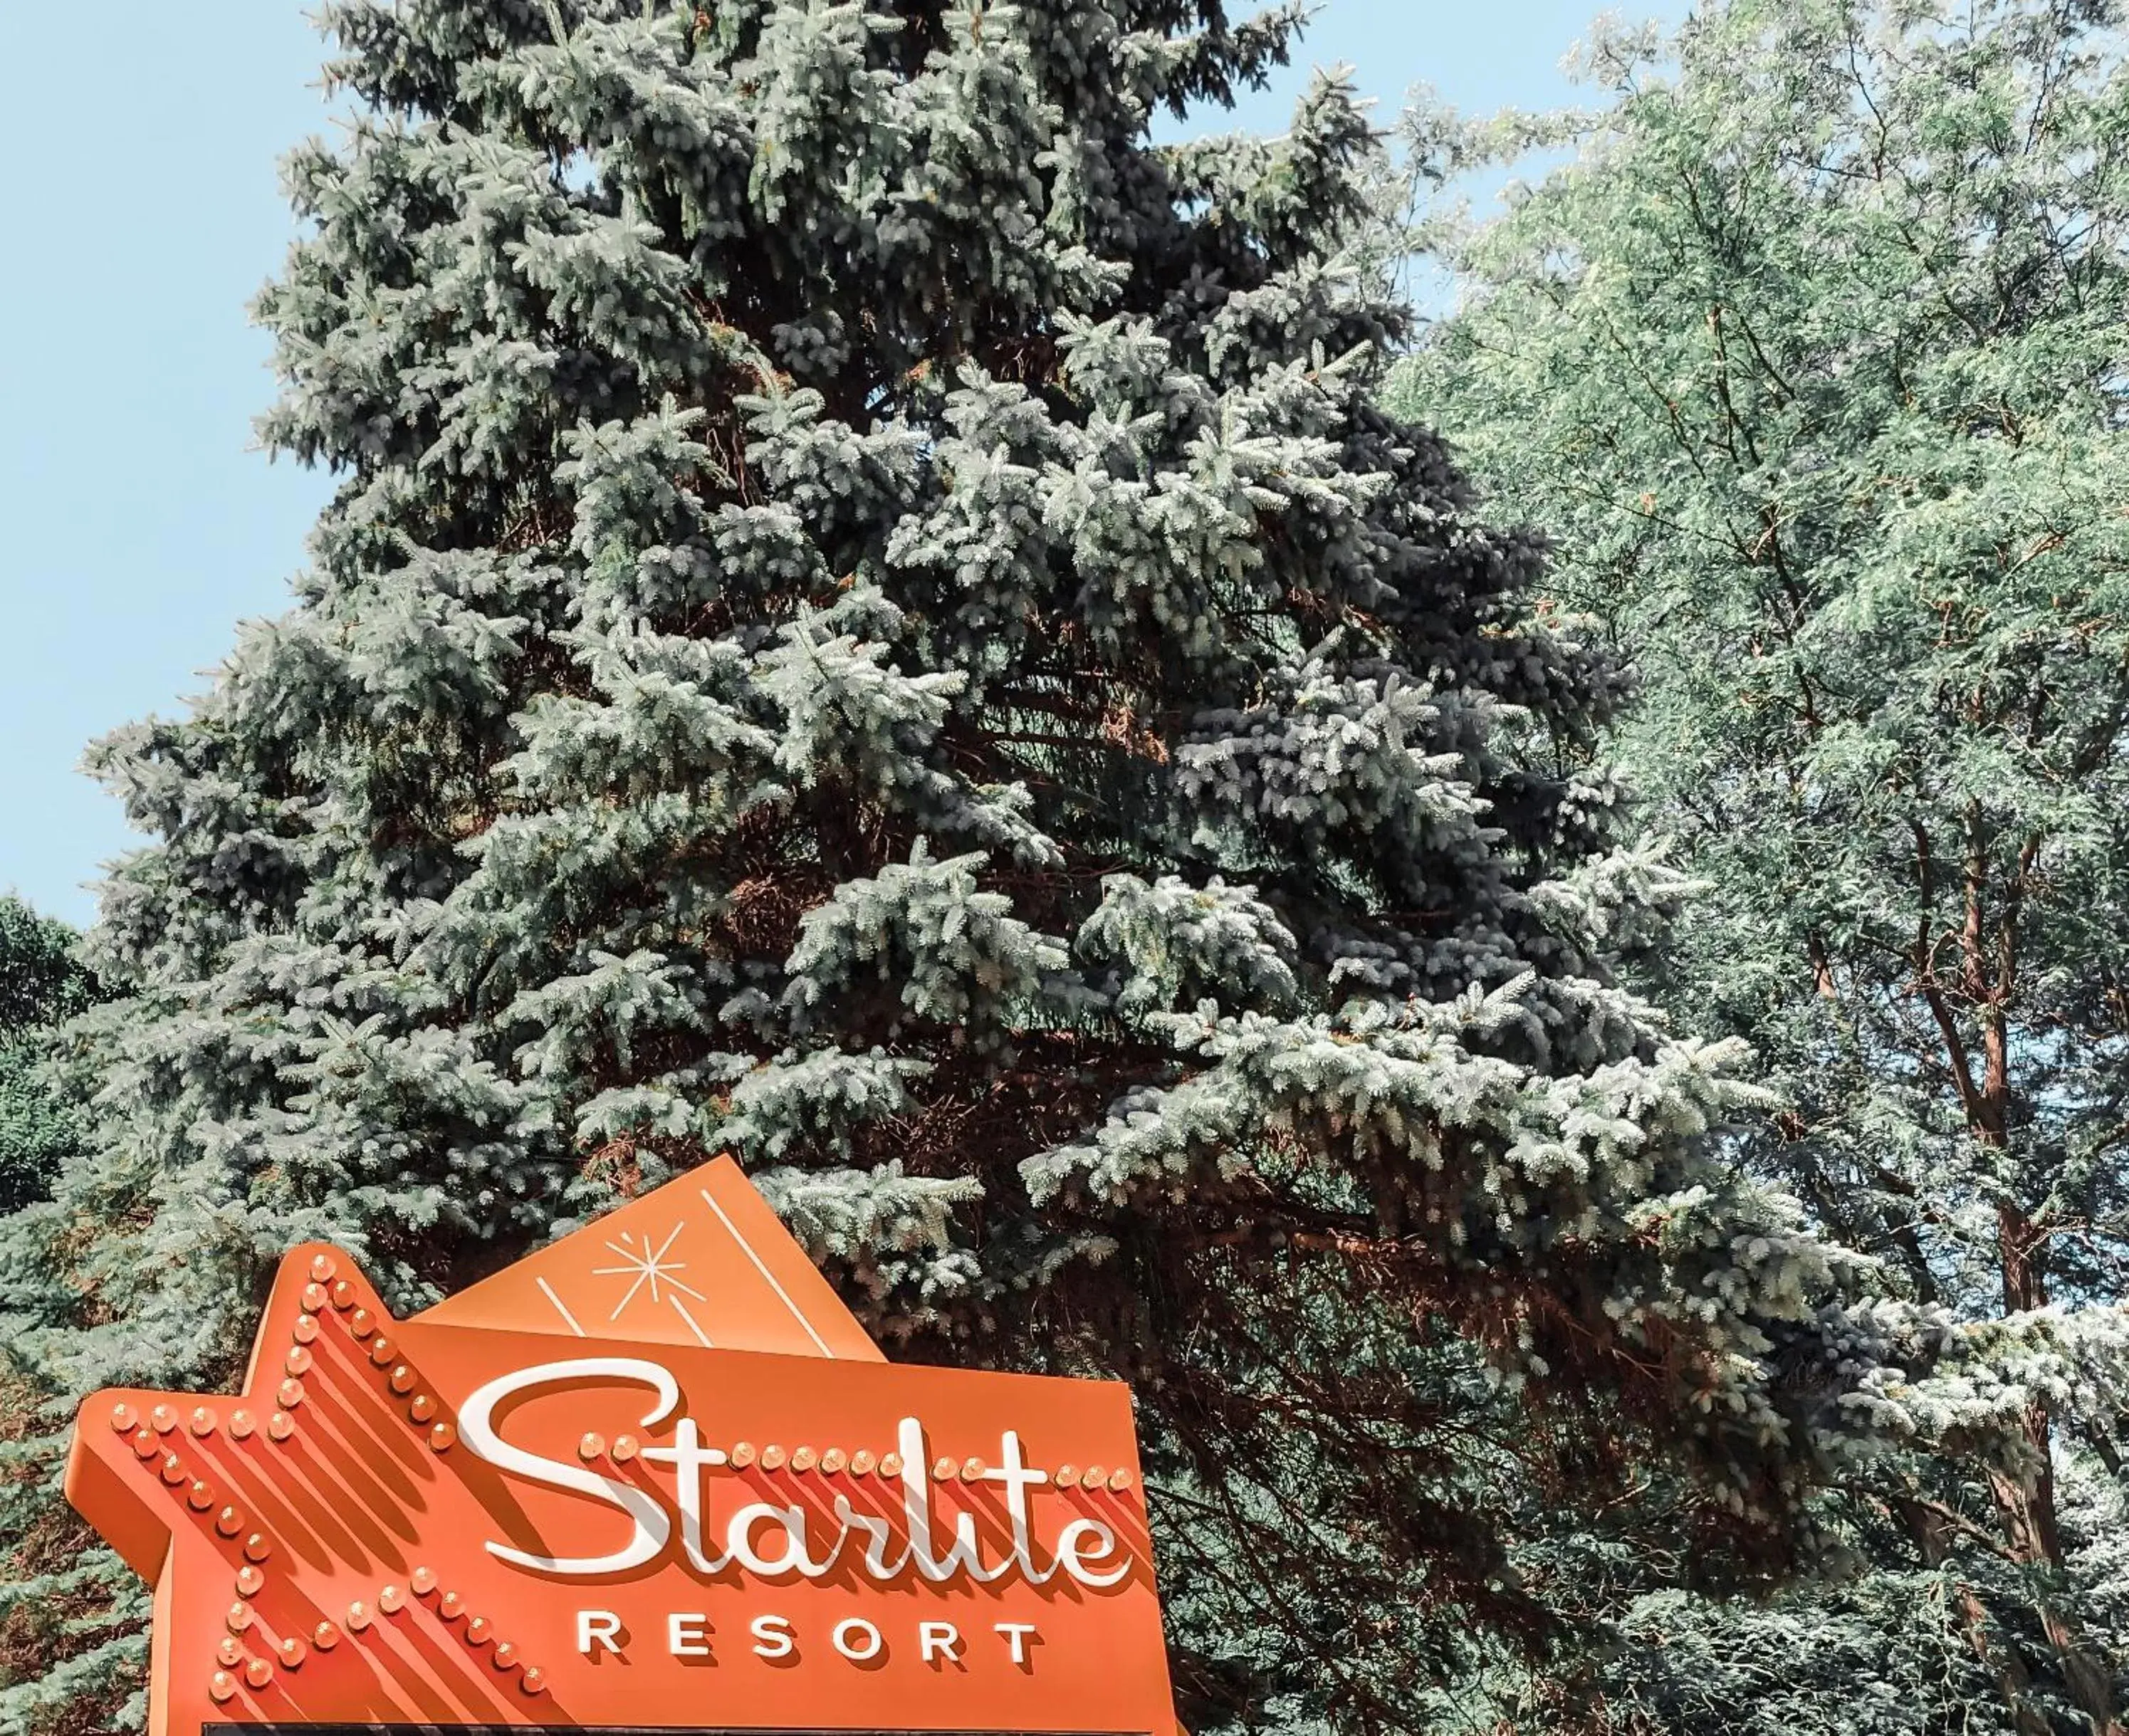 Property logo or sign in Starlite Resort